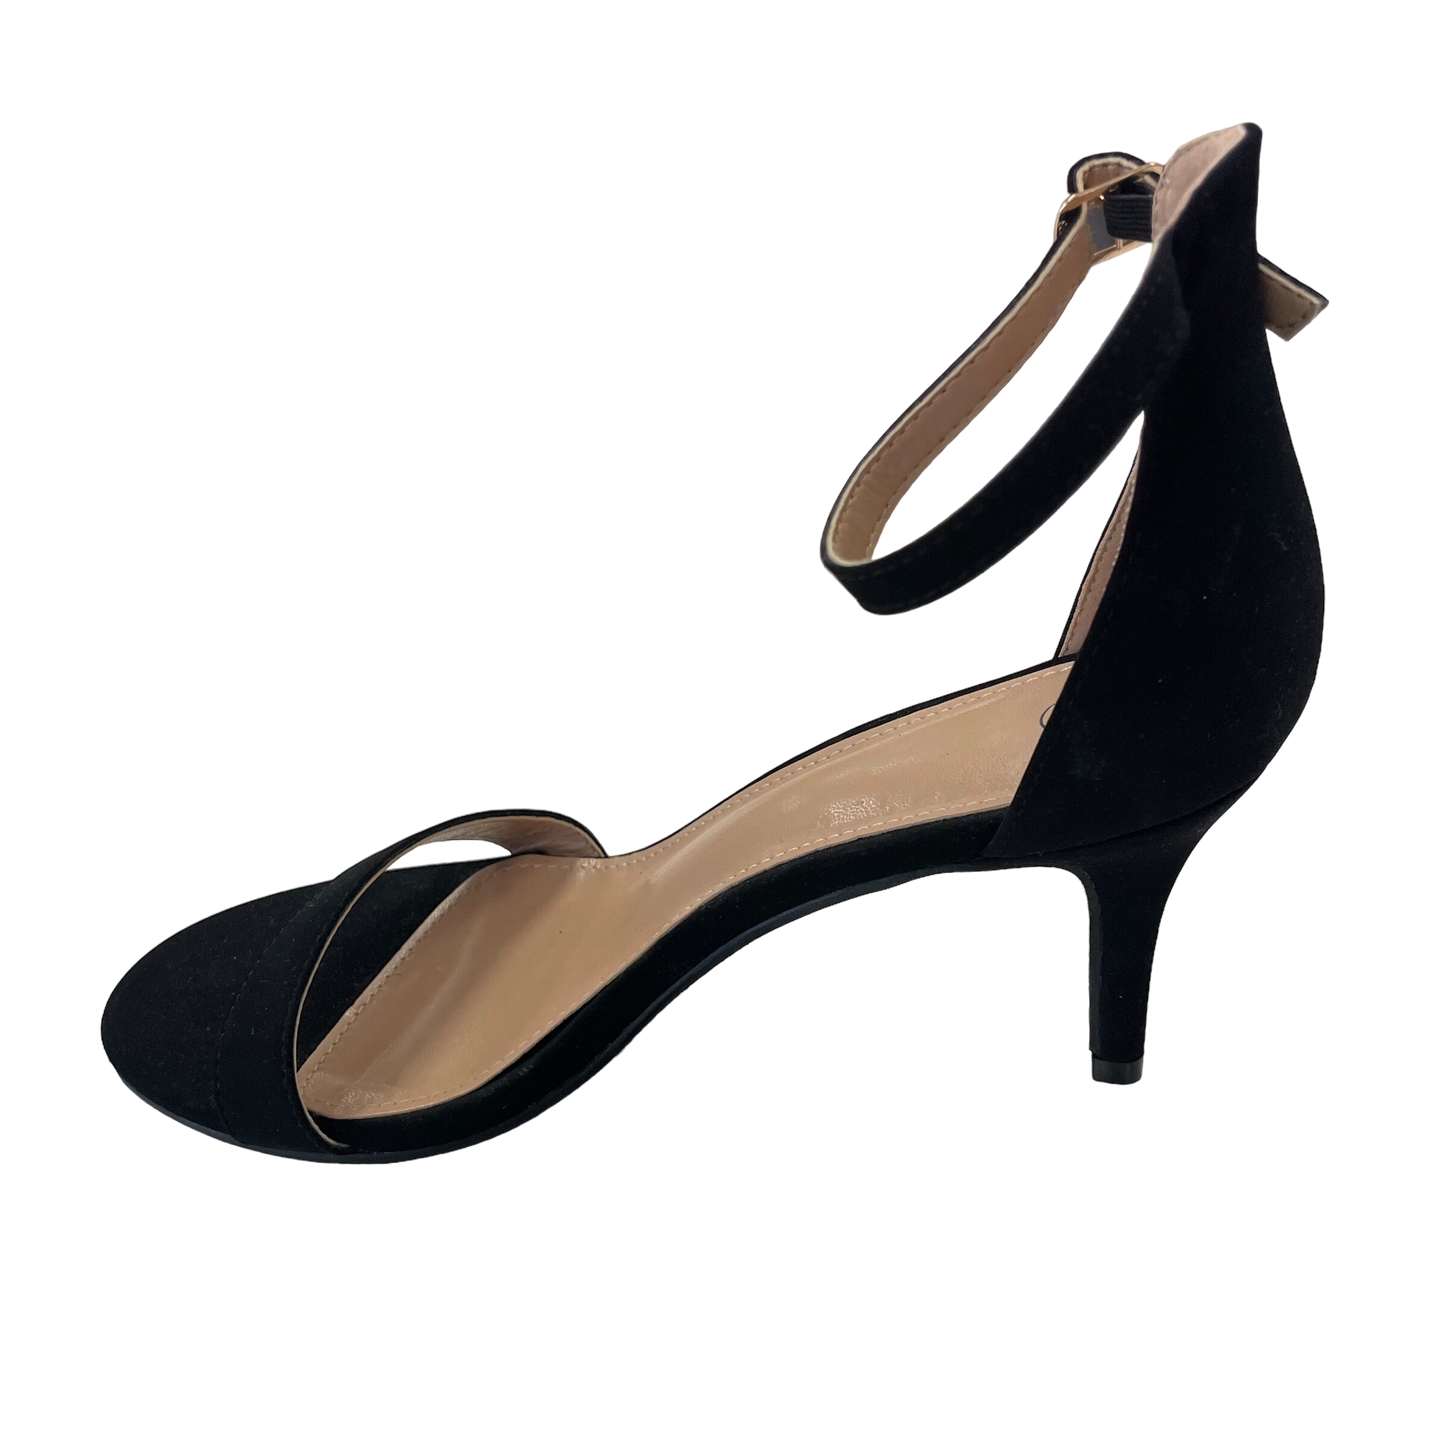 Black Shoes Heels Stiletto Cmc, Size 7